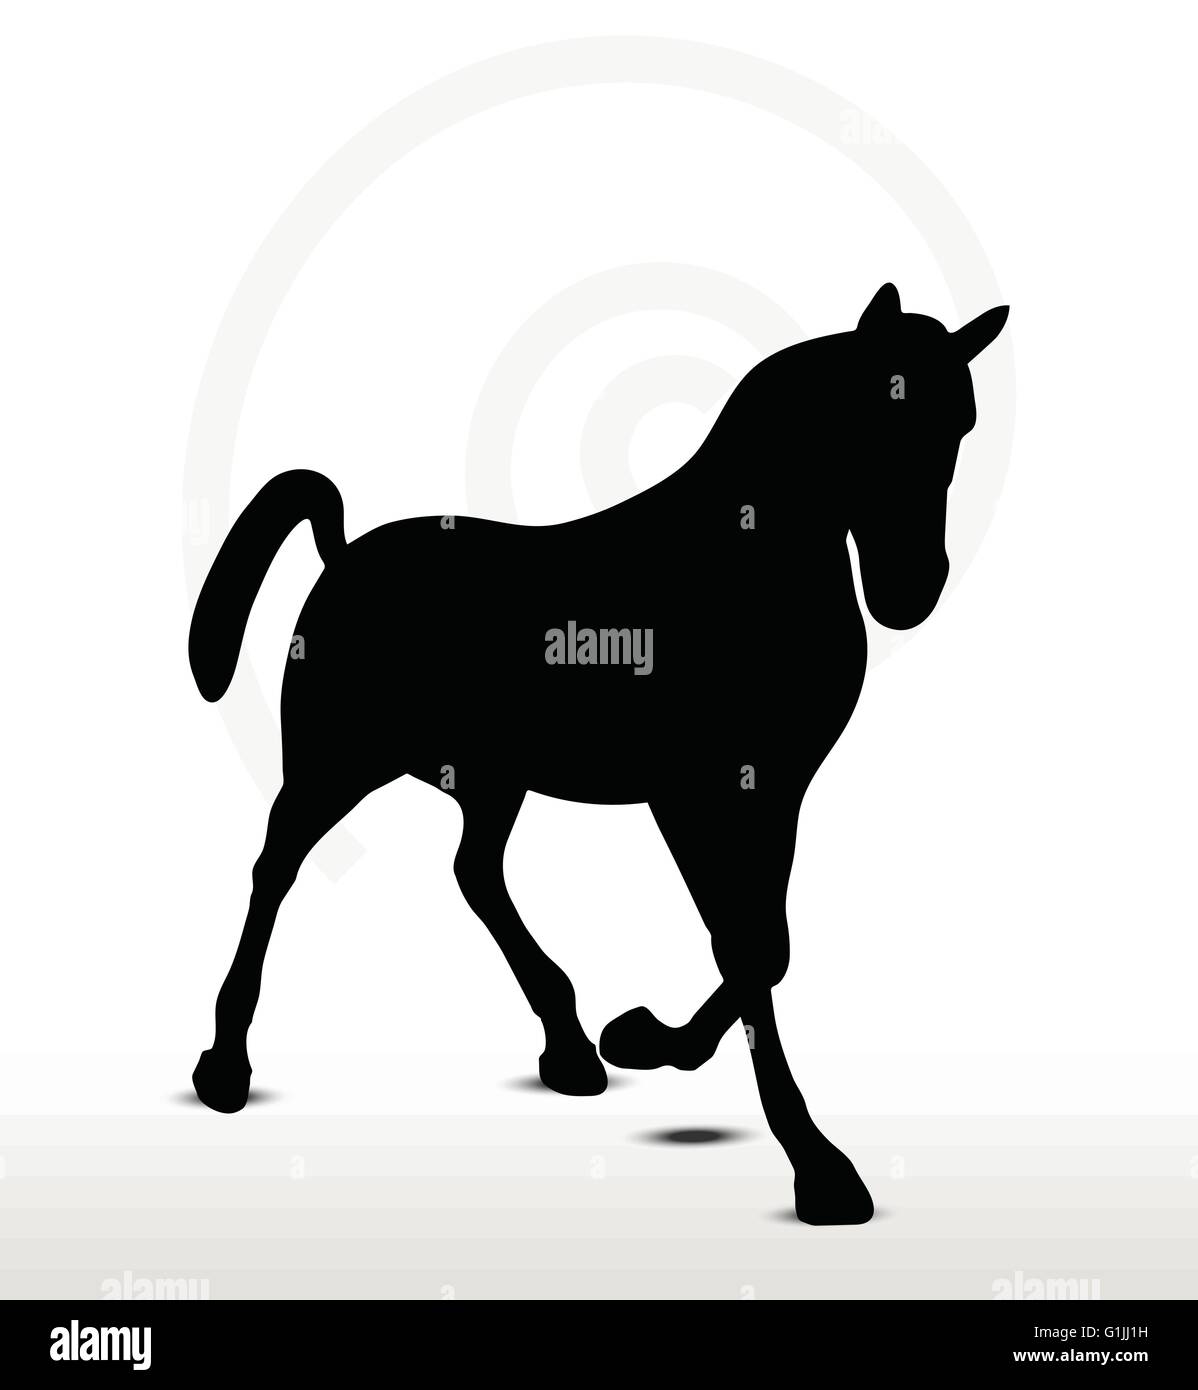 Immagine vettoriale - cavallo silhouette in posizione rampante Illustrazione Vettoriale